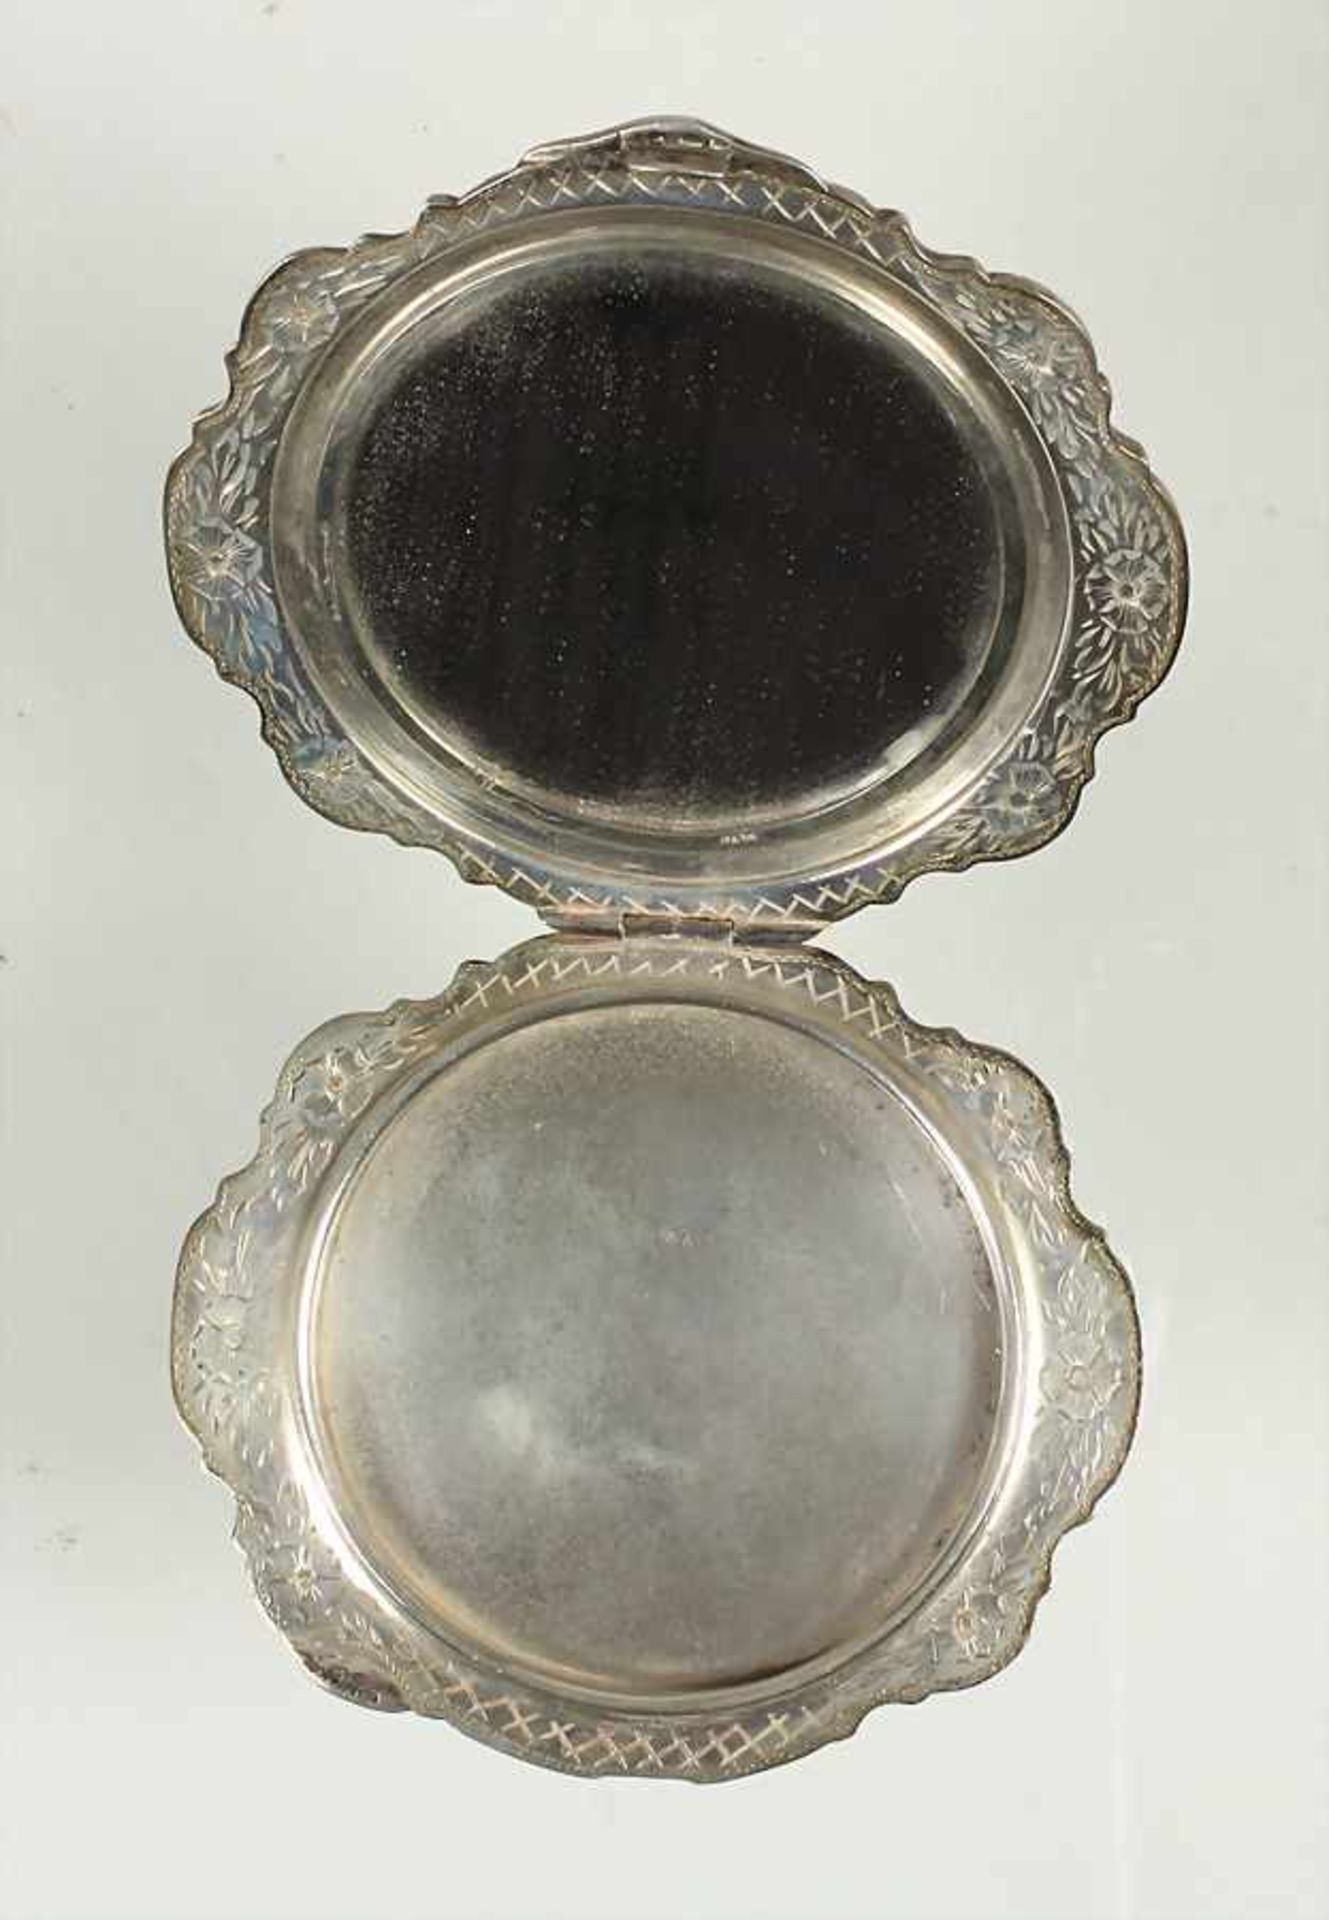 Schminkutensil Anfang 20 Jhd., Silber 800/000, innen mit Spiegel, 90,0 x 83,2 mm, total 98,0 g - Bild 2 aus 2